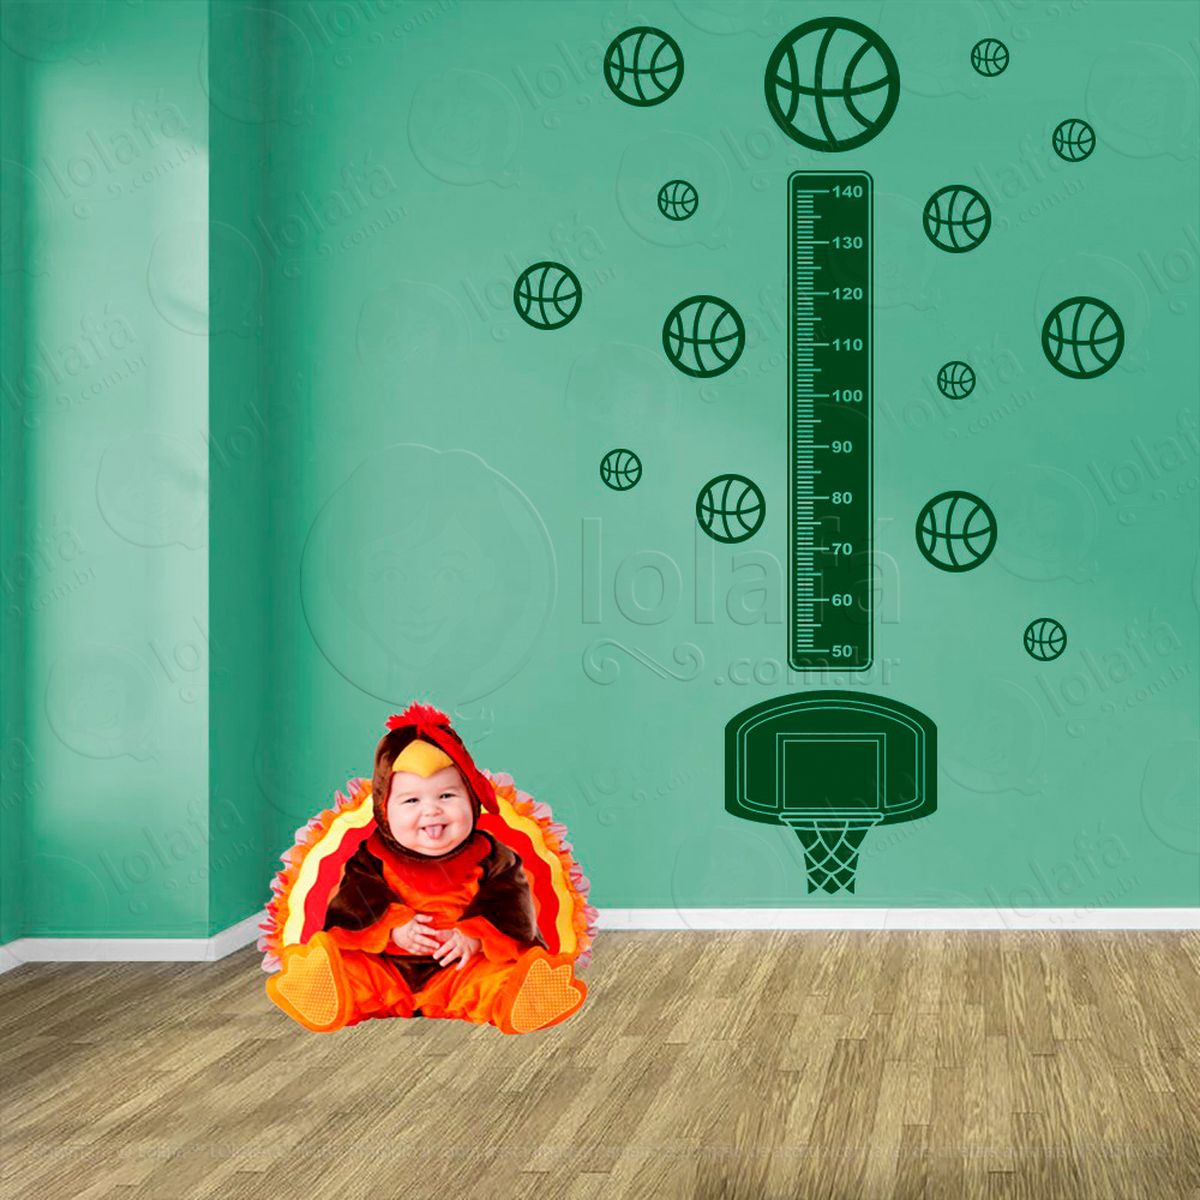 basquetebol e bolas de basquete adesivo régua de crescimento infantil, medidor de altura para quarto, porta e parede - mod:283